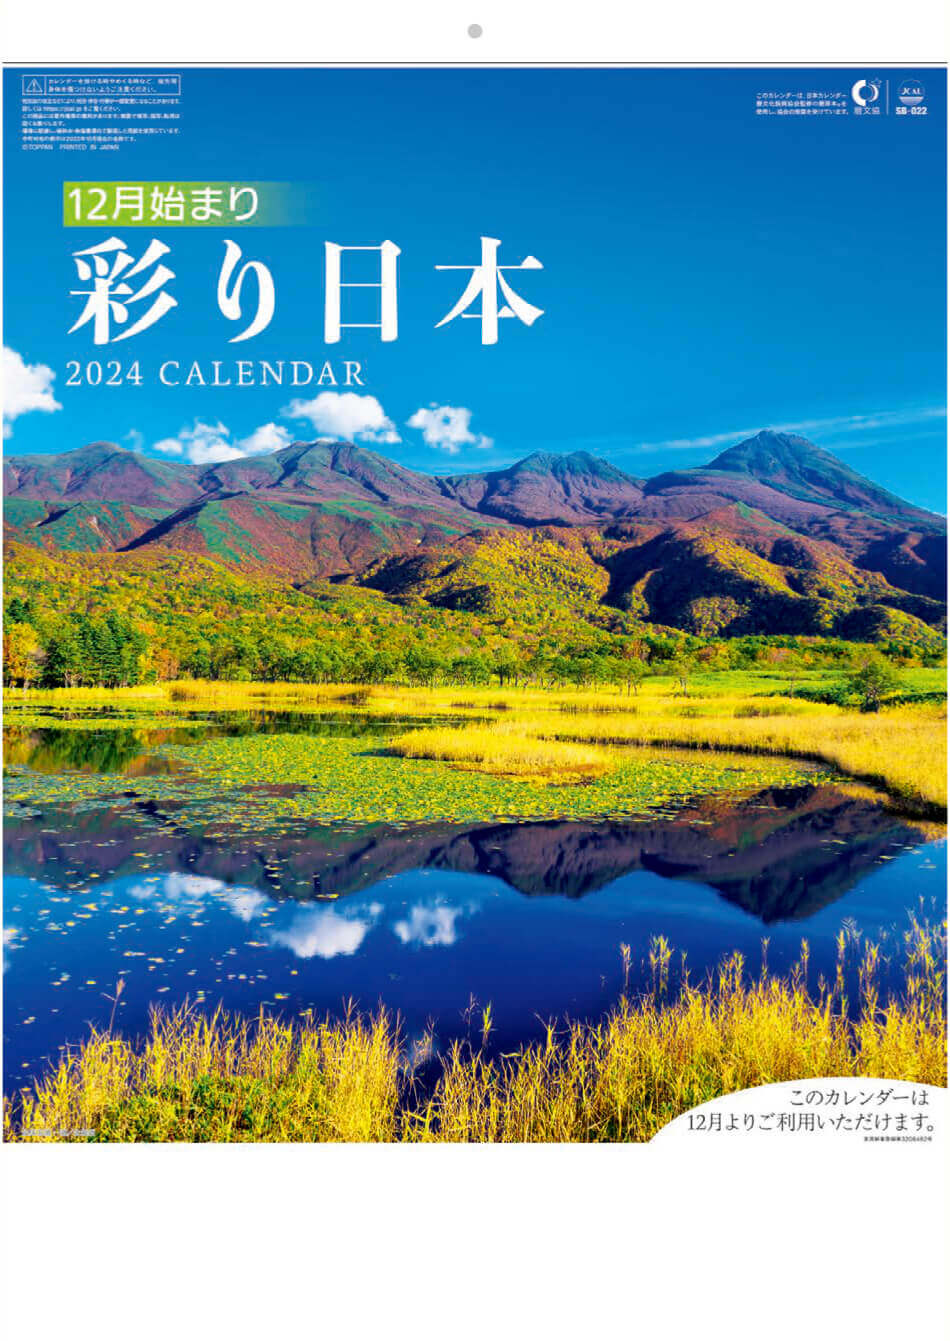  彩り日本(12月はじまり) 2024年カレンダーの画像